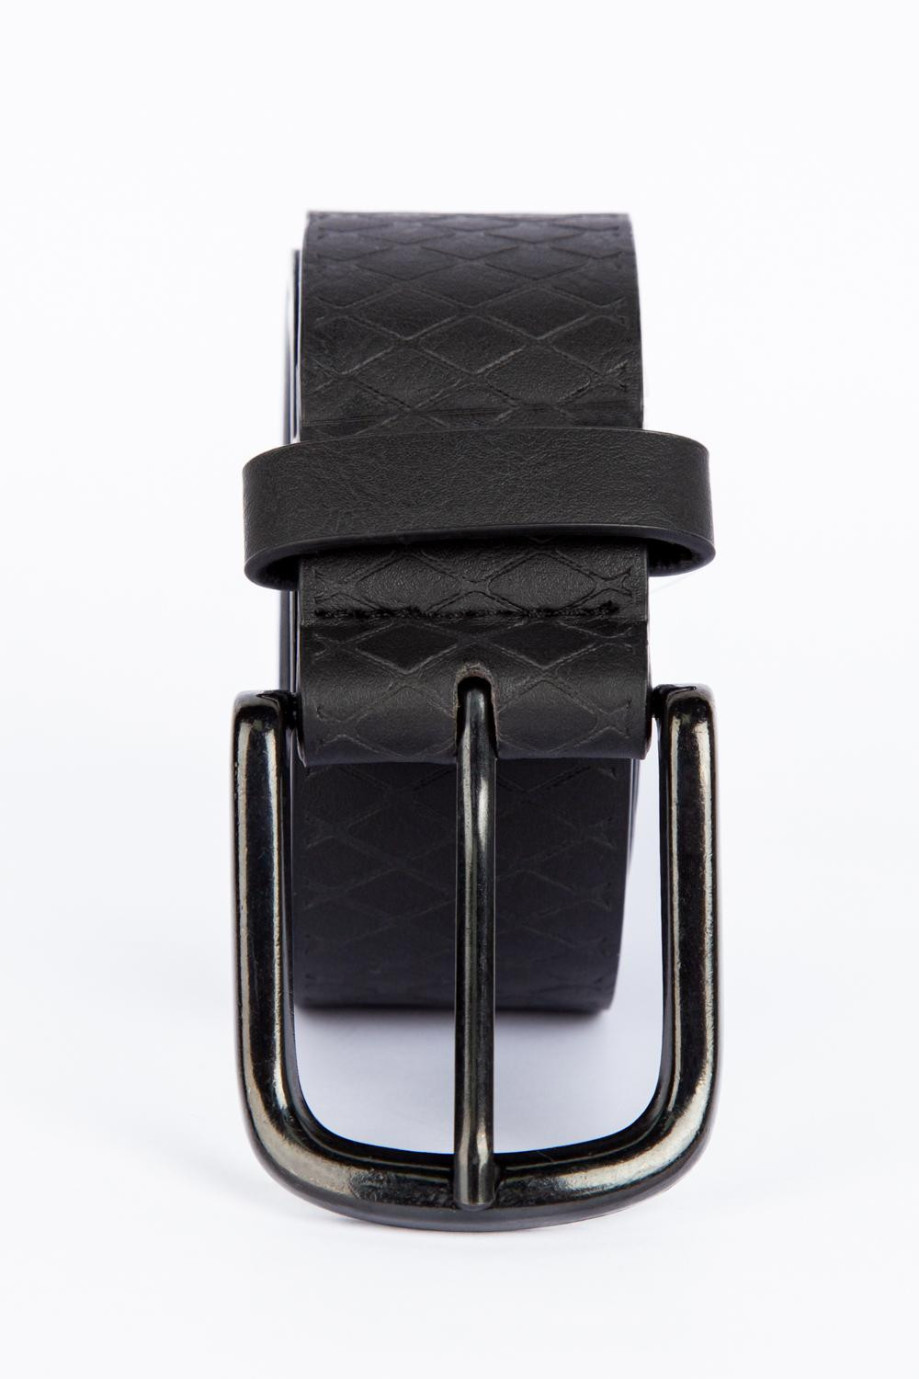 Cinturón negro con hebilla cuadrada y texturas de rombos